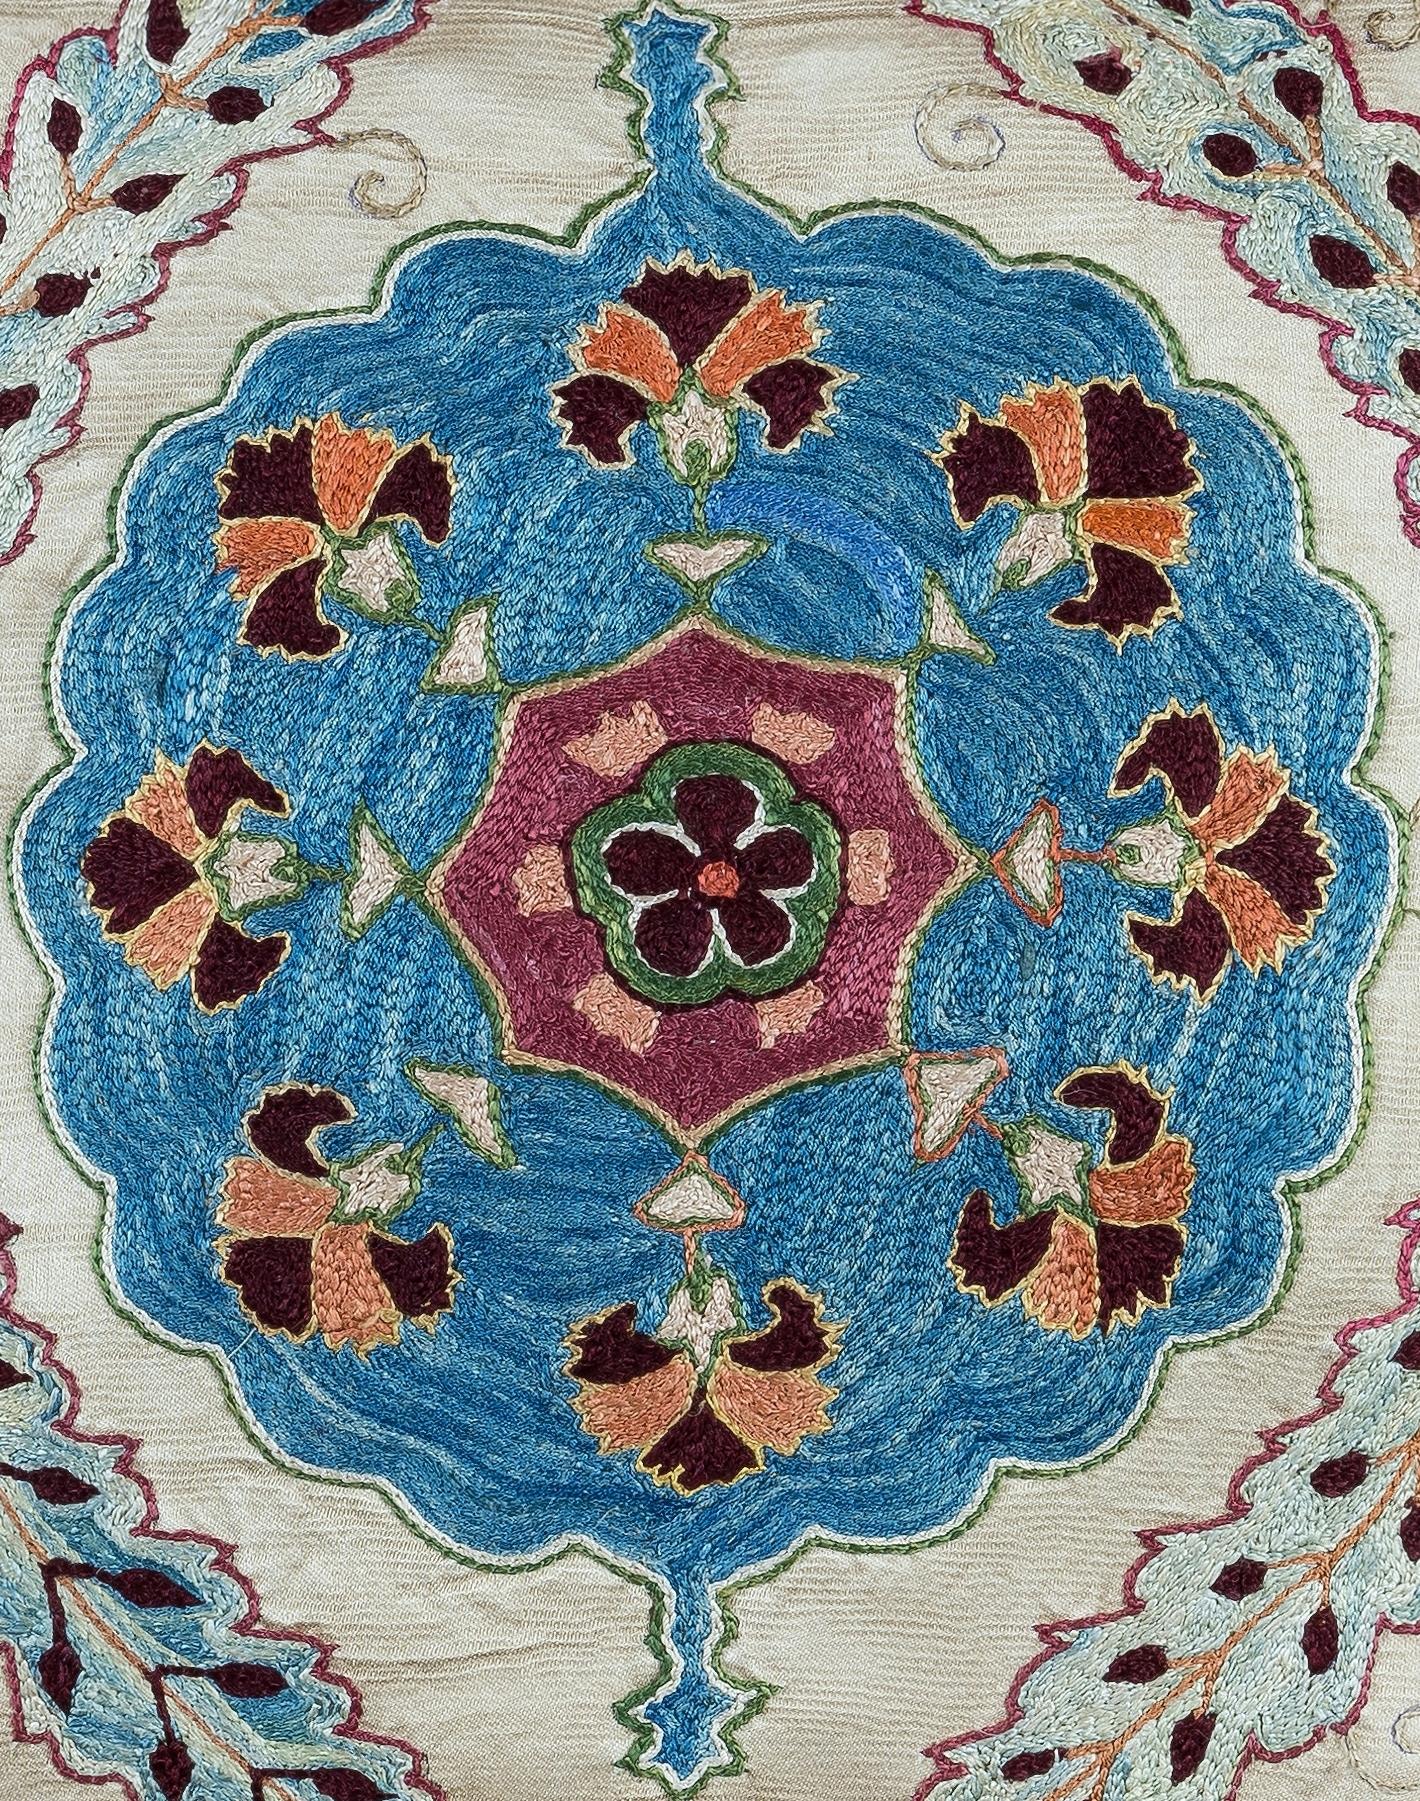 Dekorativer Suzani-Kissenbezug aus handgestickter Seide auf Seidengrund, Blumen- und Rankenmotive, Leinenrückseite mit Reißverschluss, ohne Einlage.

Empfohlene Fein- und Spezialwäsche.

Suzani ist eine Art von handgestickten und dekorativen